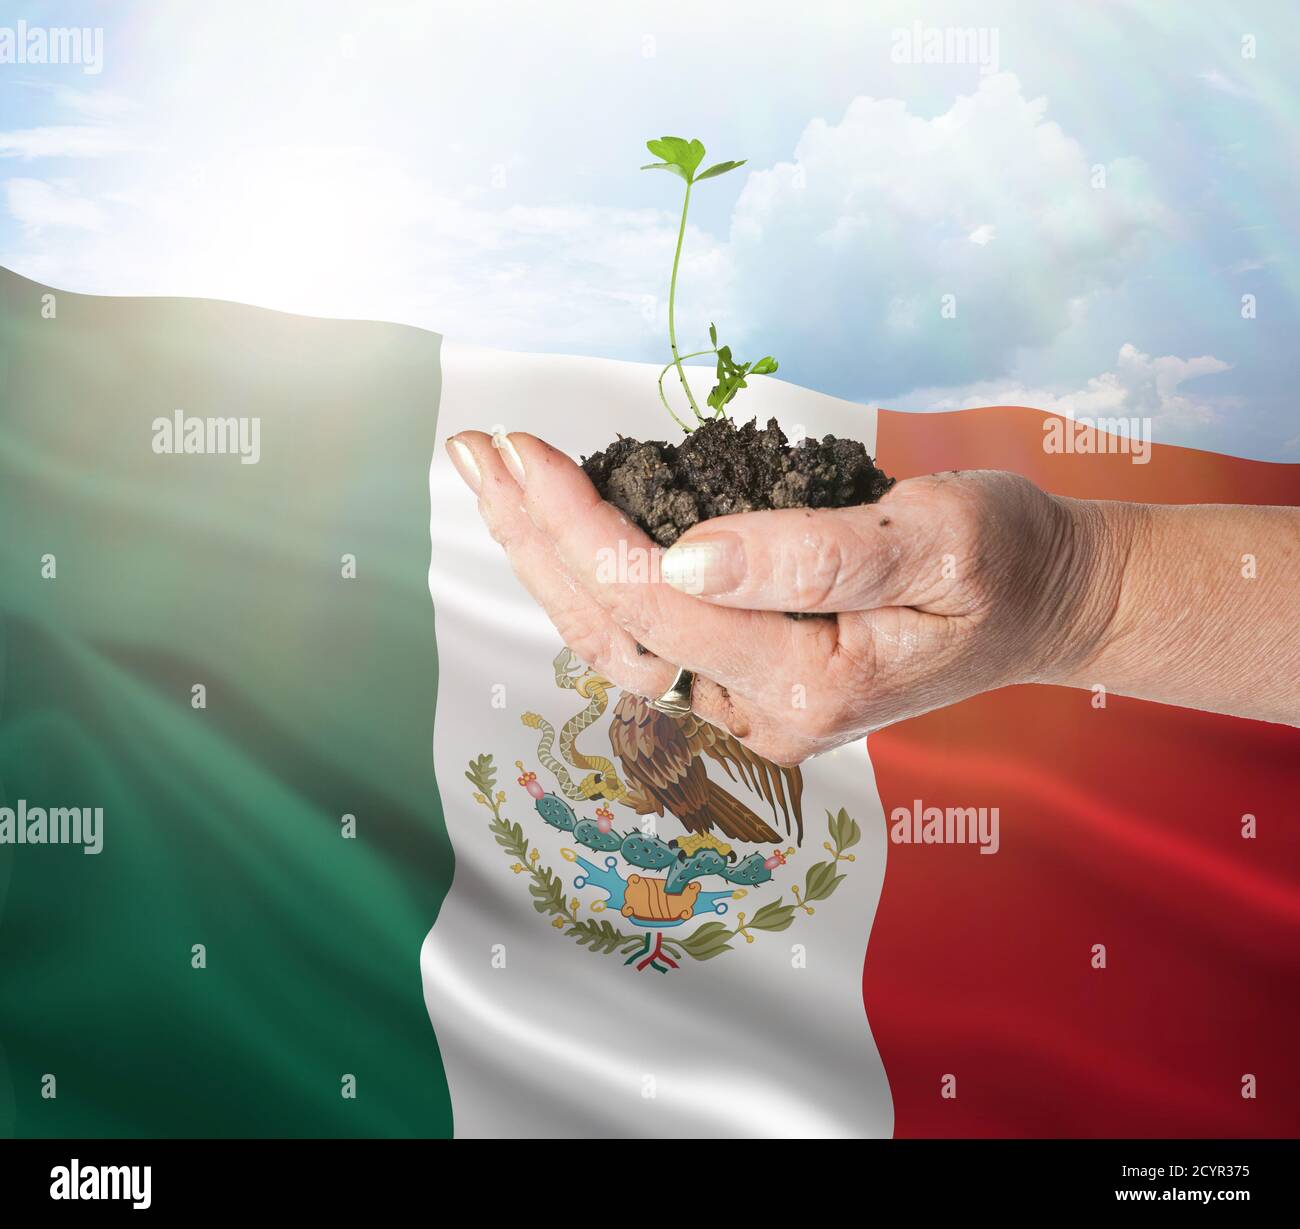 México crecimiento y nuevo comienzo. Concepto de energía renovable verde y ecología. Mano sosteniendo planta joven. Foto de stock